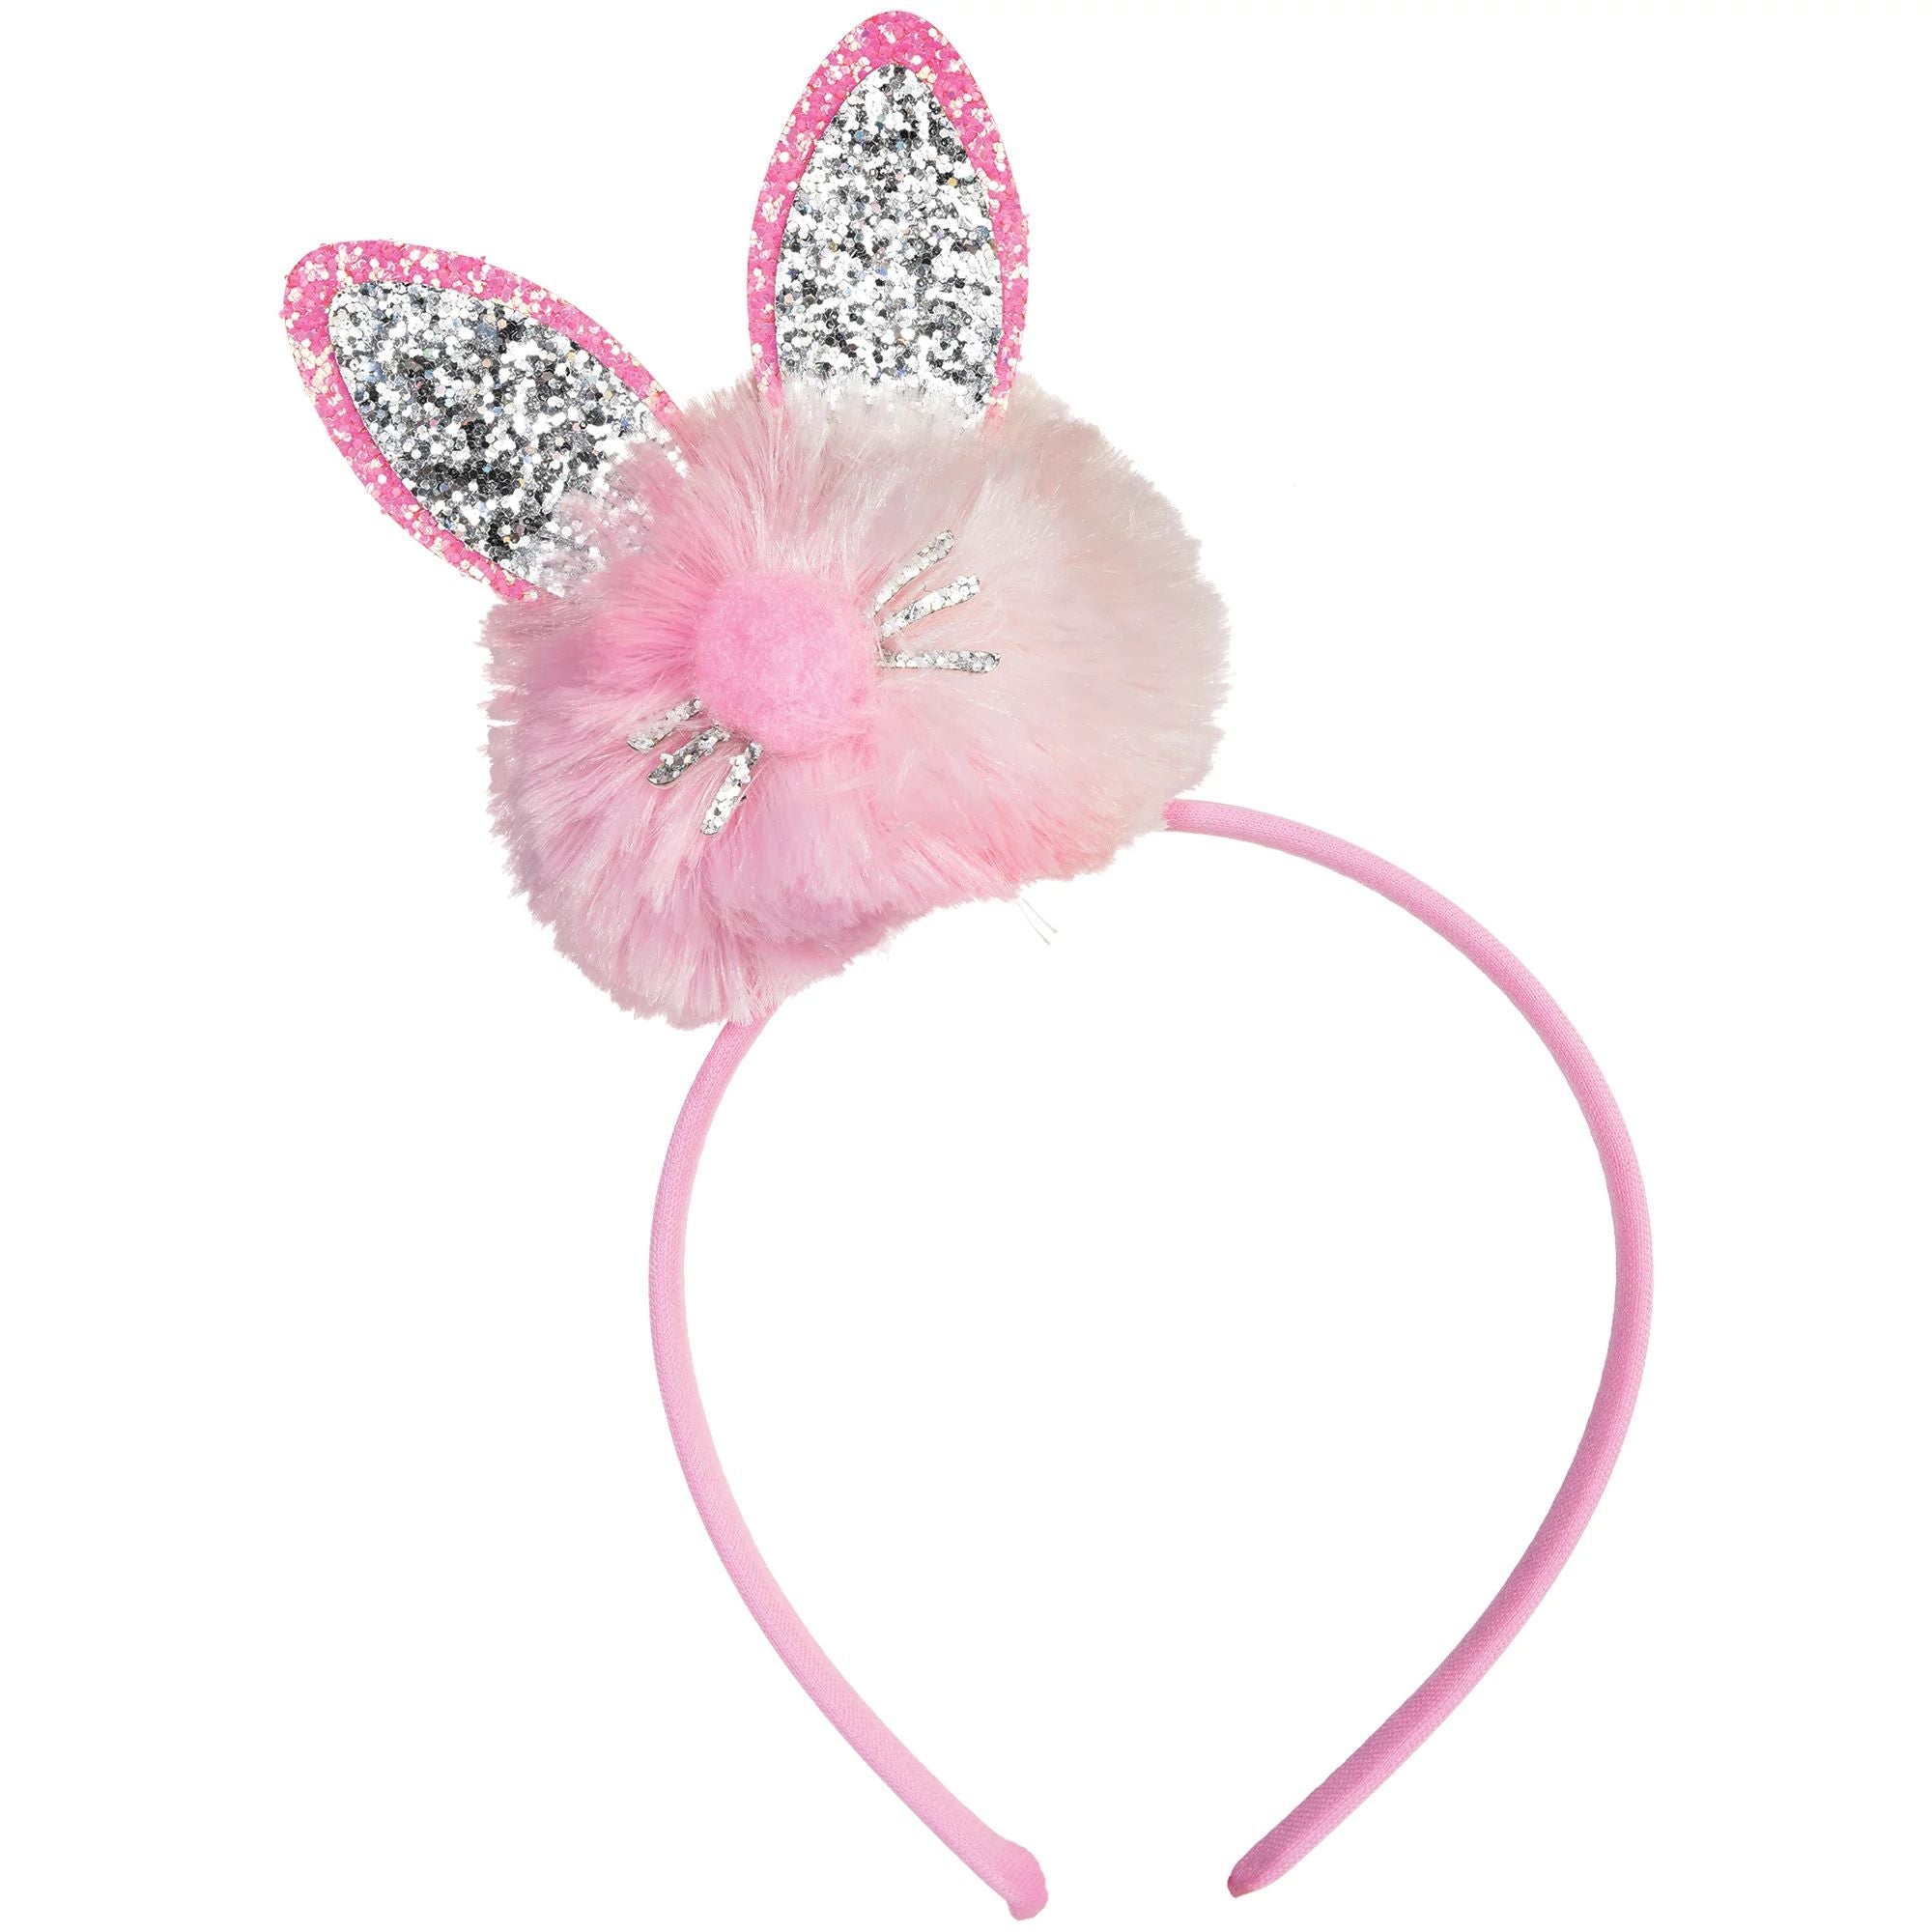 Bunny Ears Pom Pom Headband